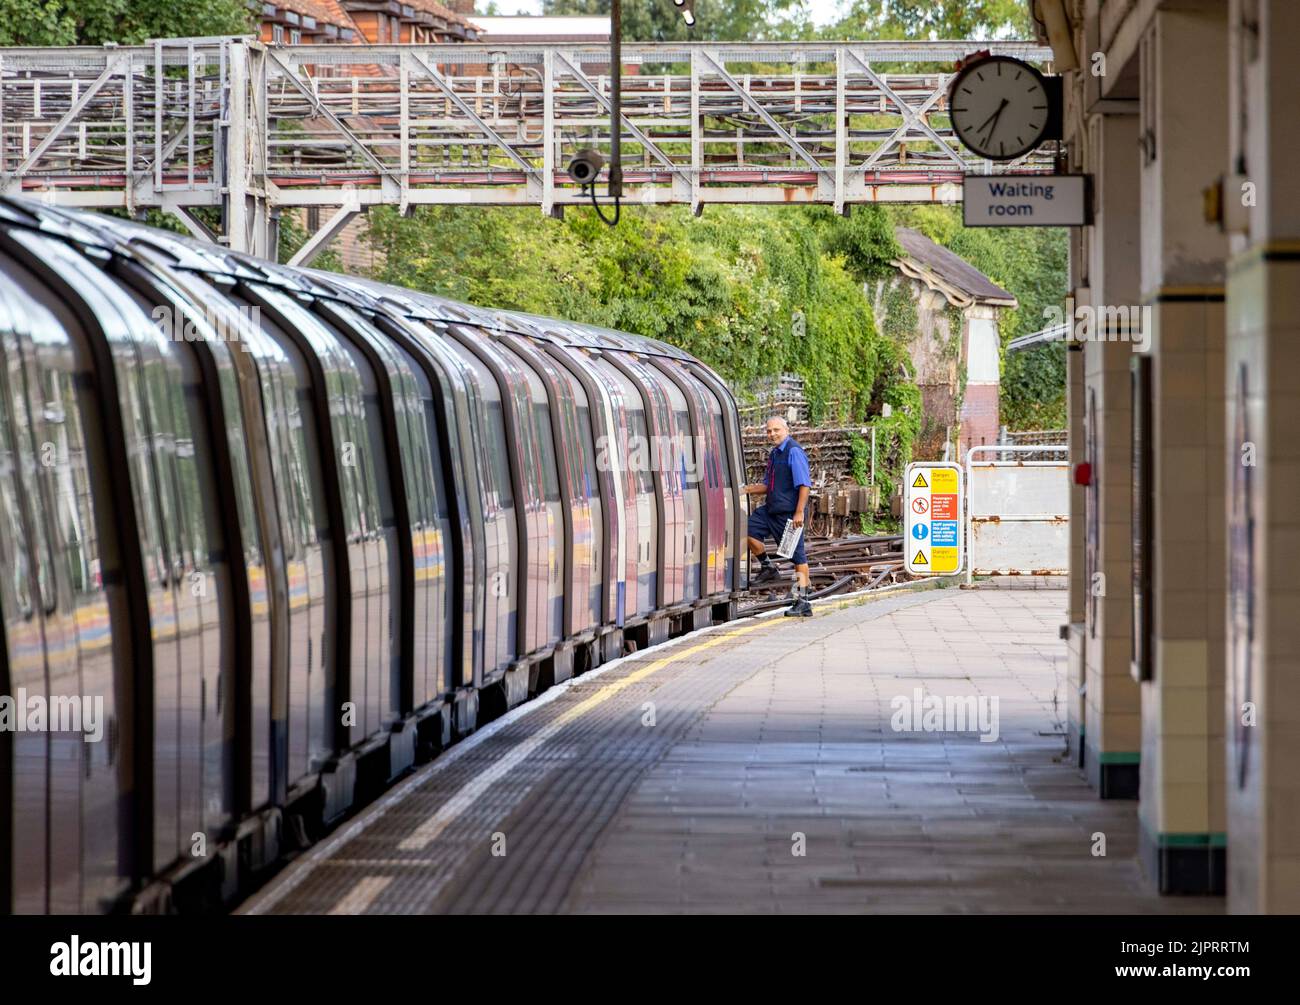 le pic montre: 19.8.22 chauffeur de métro s'amnce à l'avant du train pour le ramener vers le nord et pas plus loin dans Londres à la gare East Finchley Banque D'Images